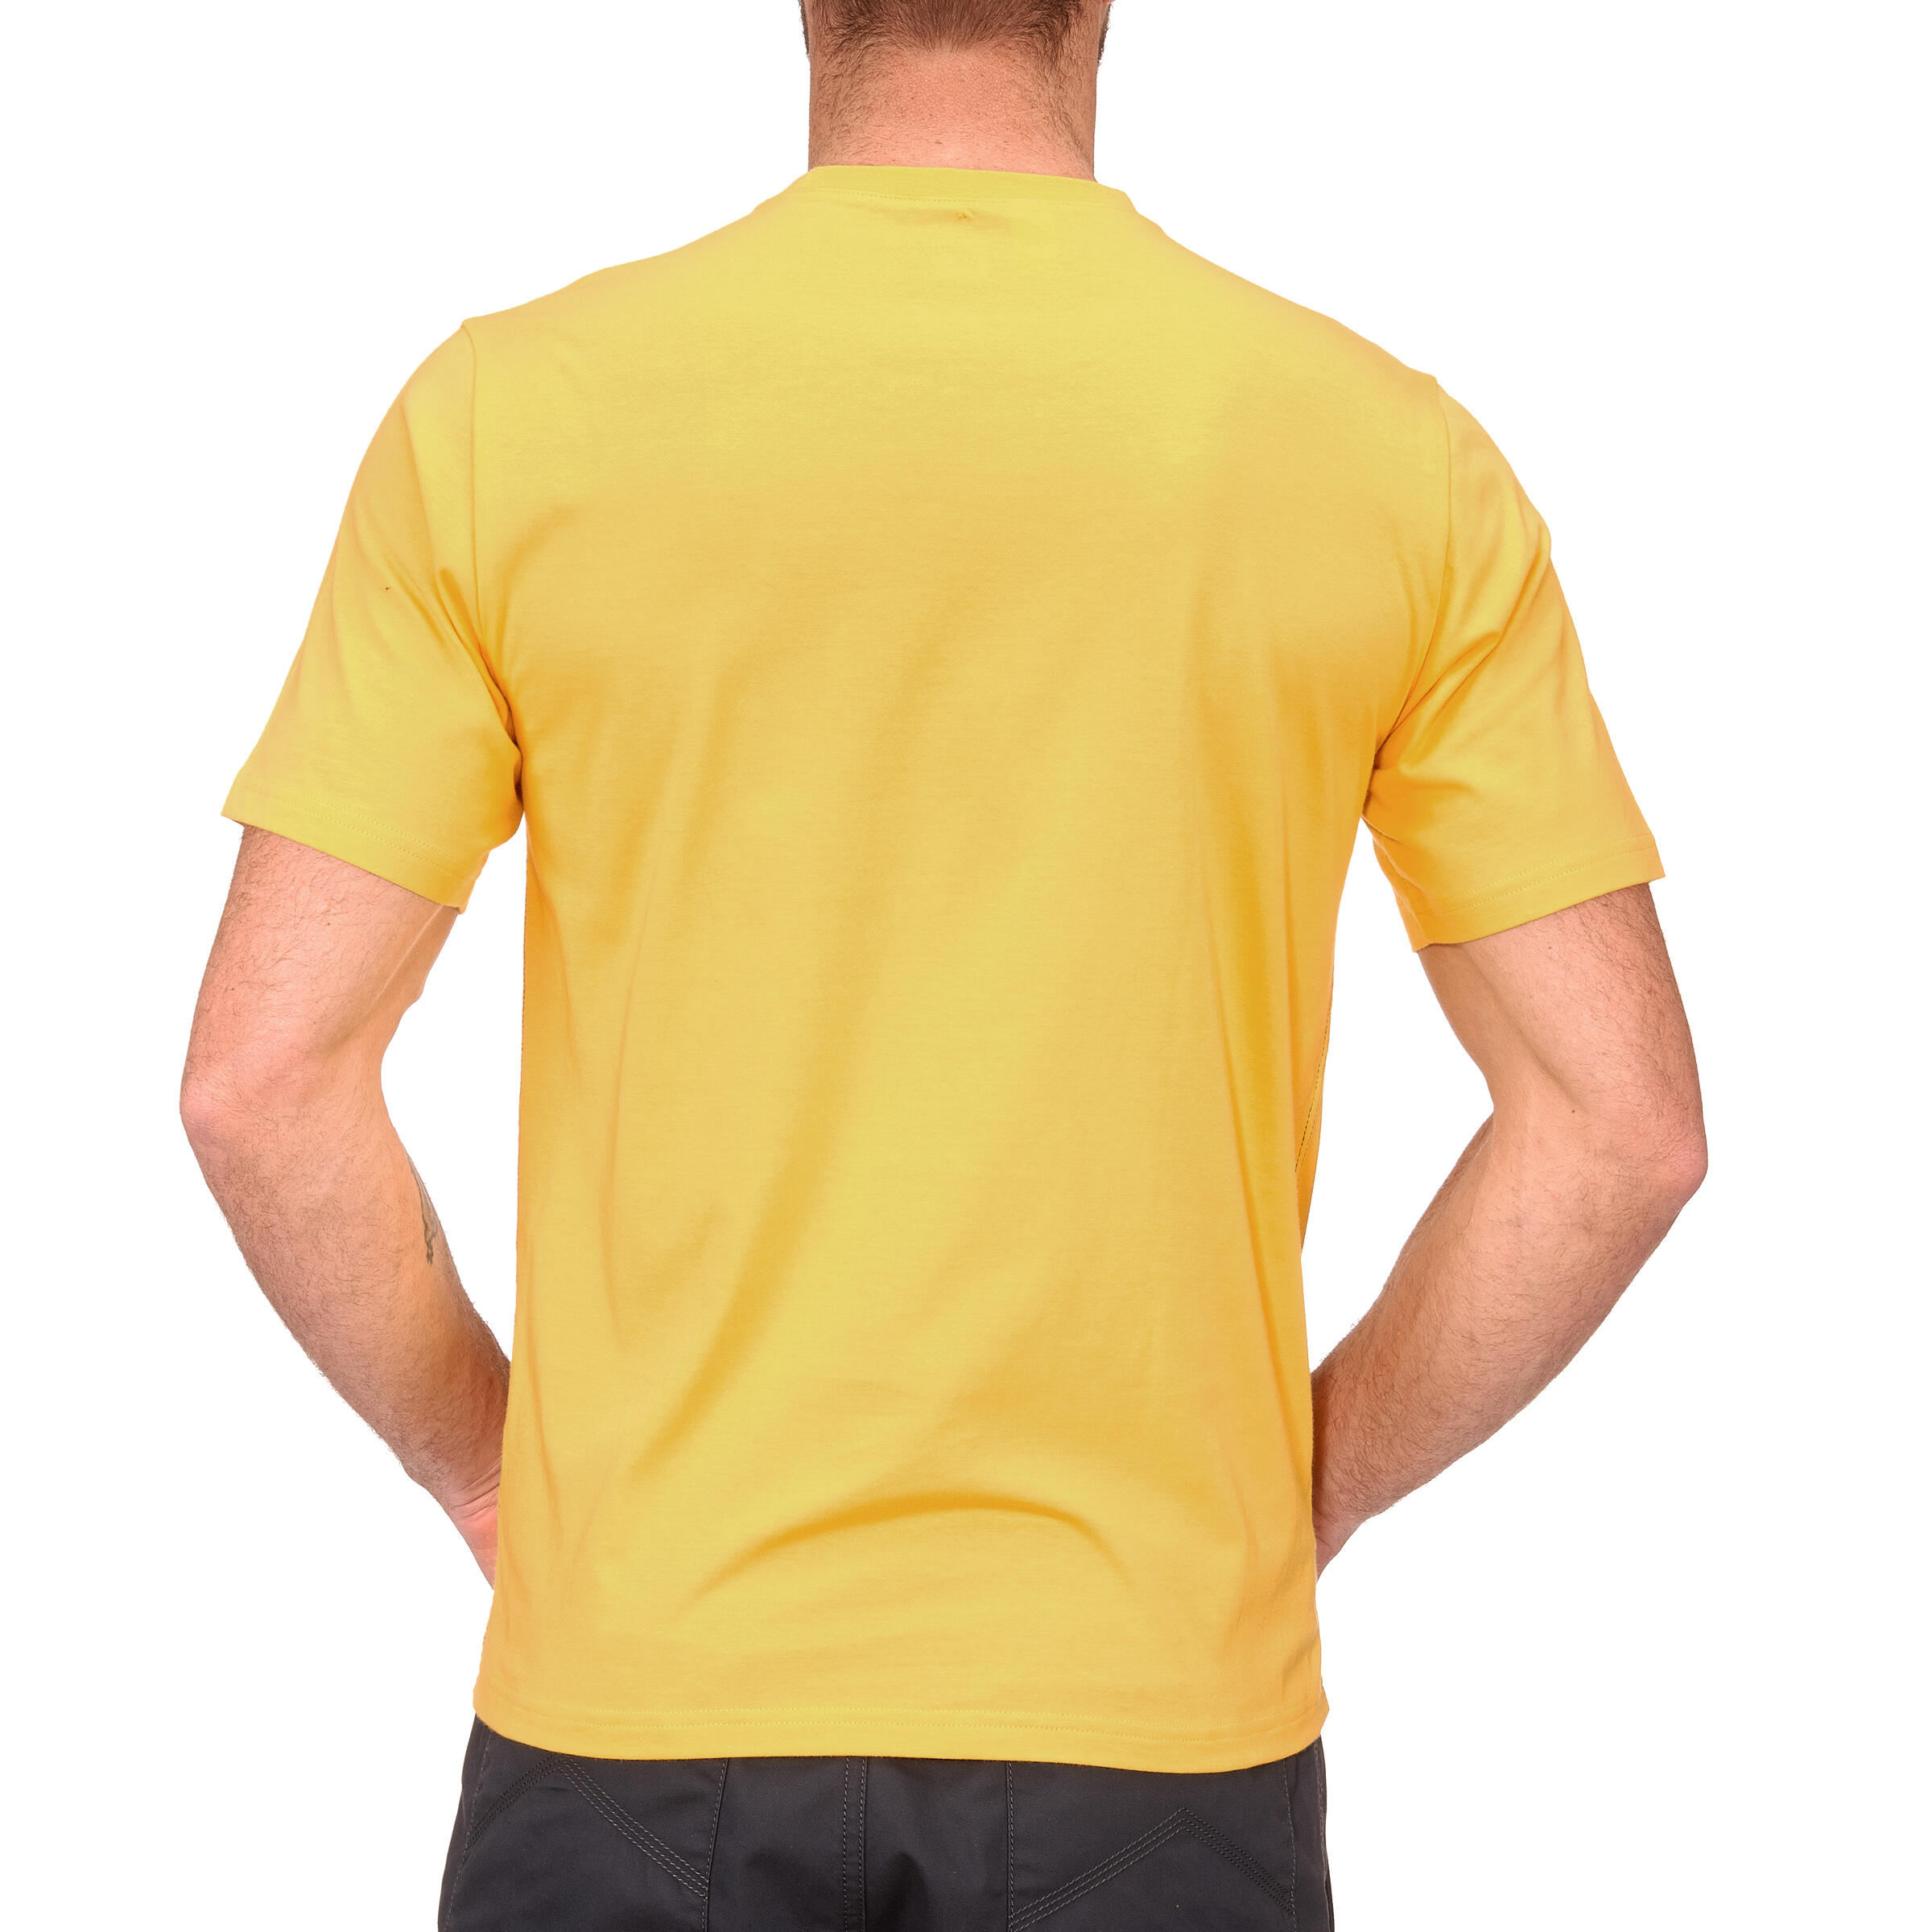 TechTIL 100 Men's Short-Sleeve Hiking T-Shirt - Yellow 4/10